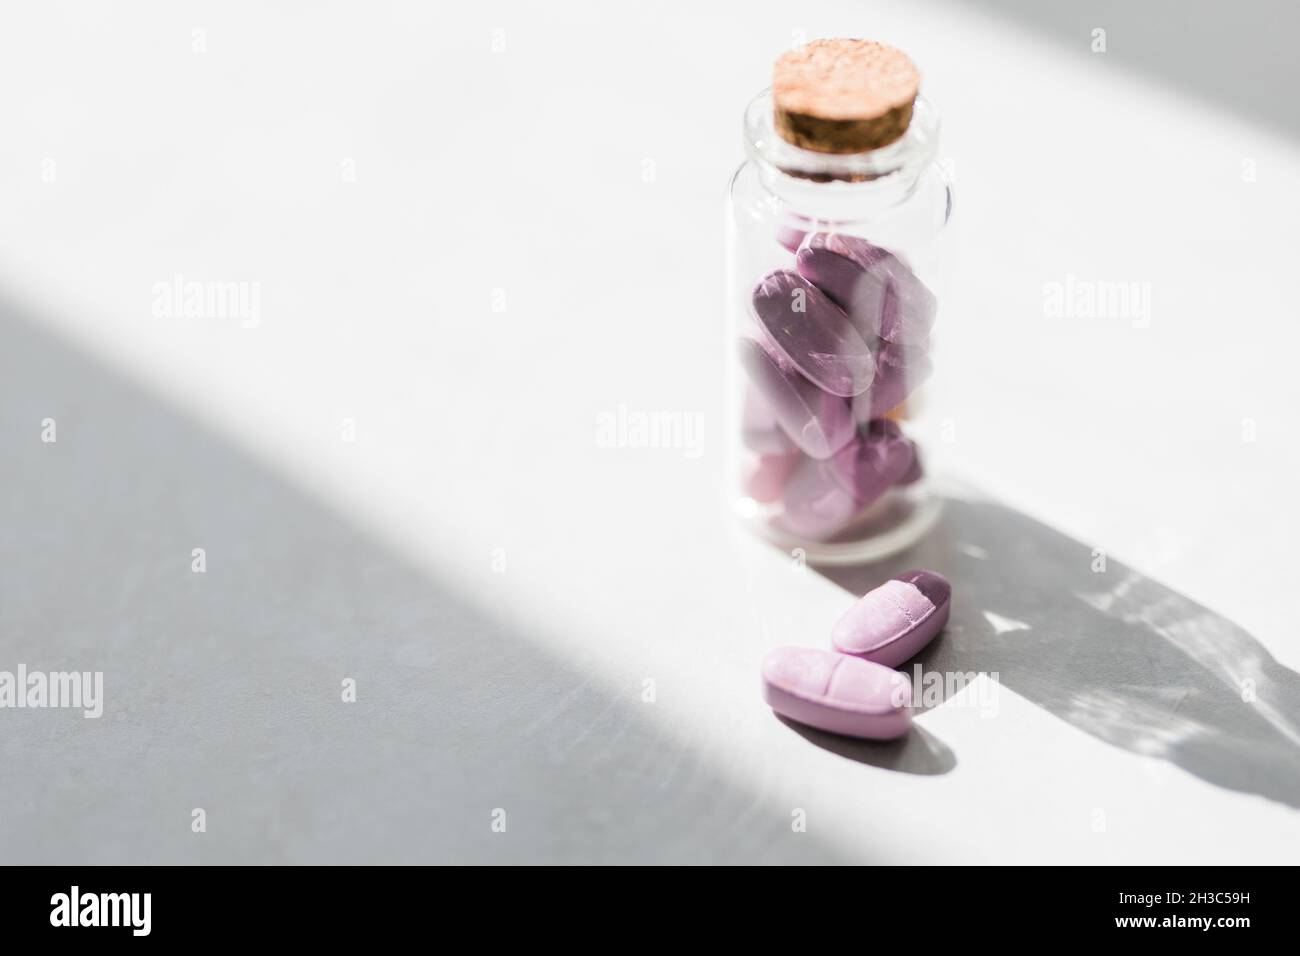 pillole vitaminiche rosa in un vaso di vetro jn tavola bianca. Medicina conservativa. Concetto di assistenza sanitaria. Foto Stock